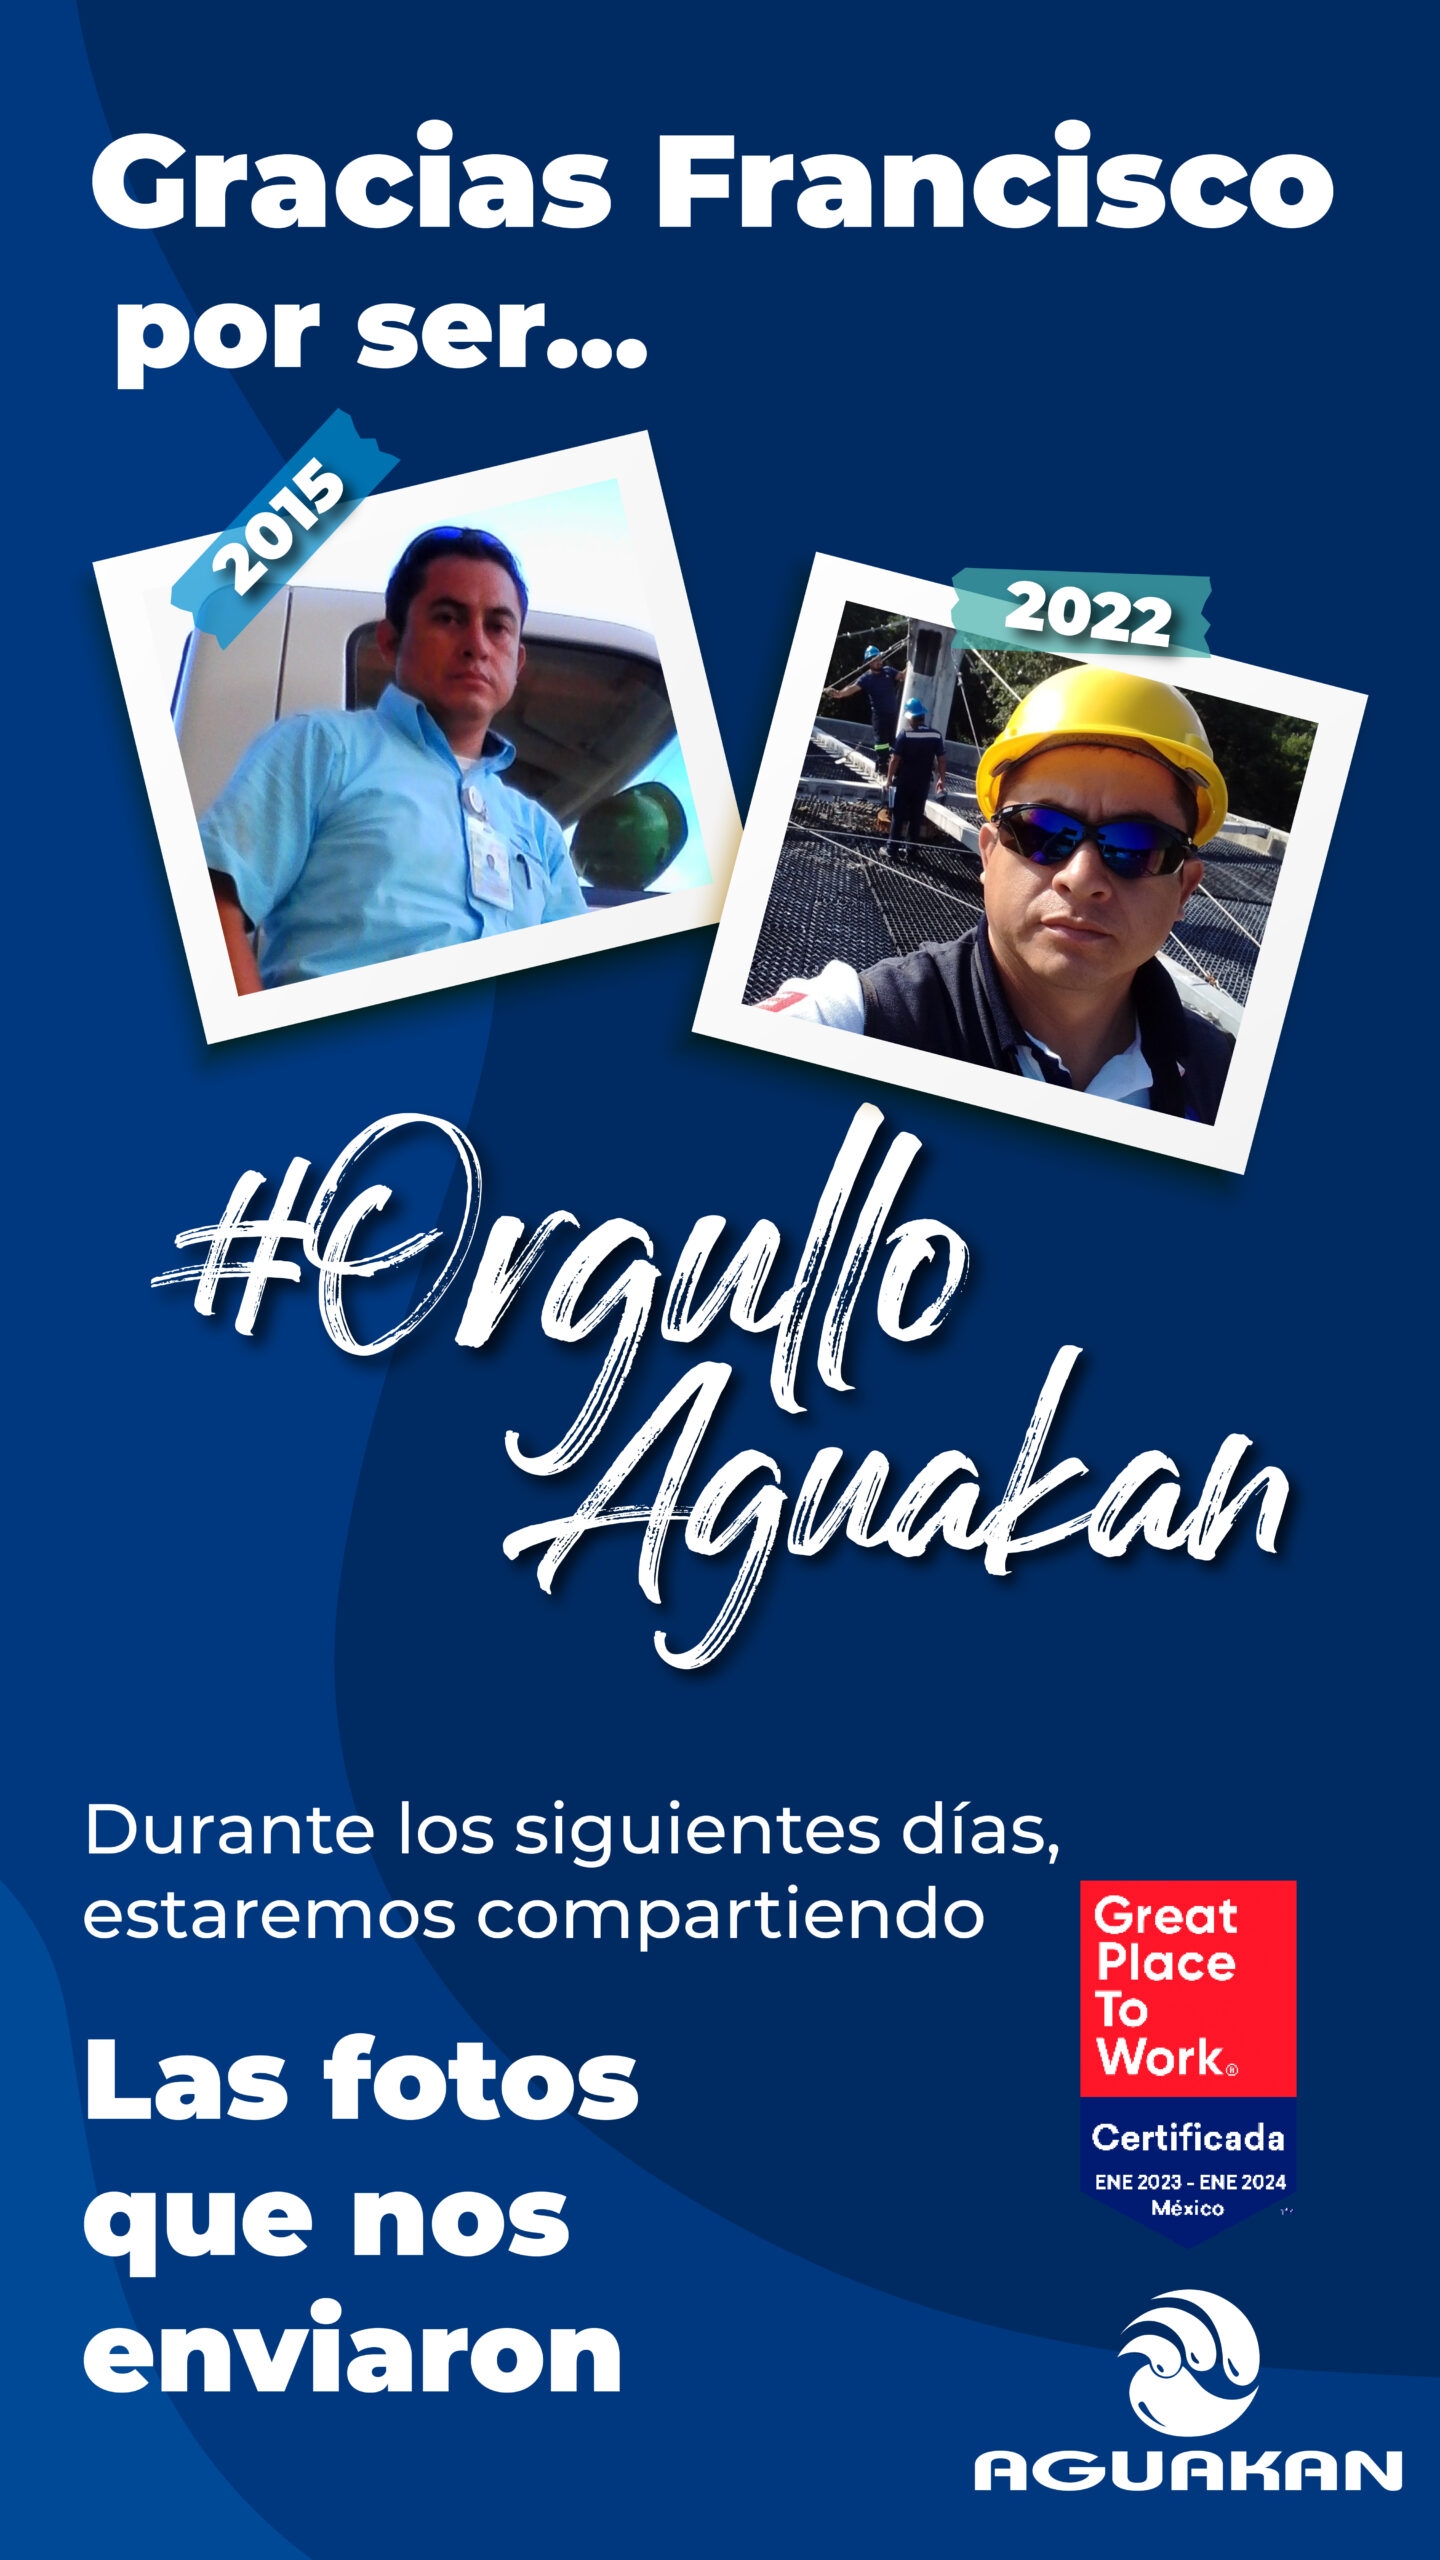 Gracias por enviarnos las fotografías de sus compañeros y compañeras que son #OrgulloAGUAKAN #SomosGPTW#LaTransformaciónLaHacemosTodos